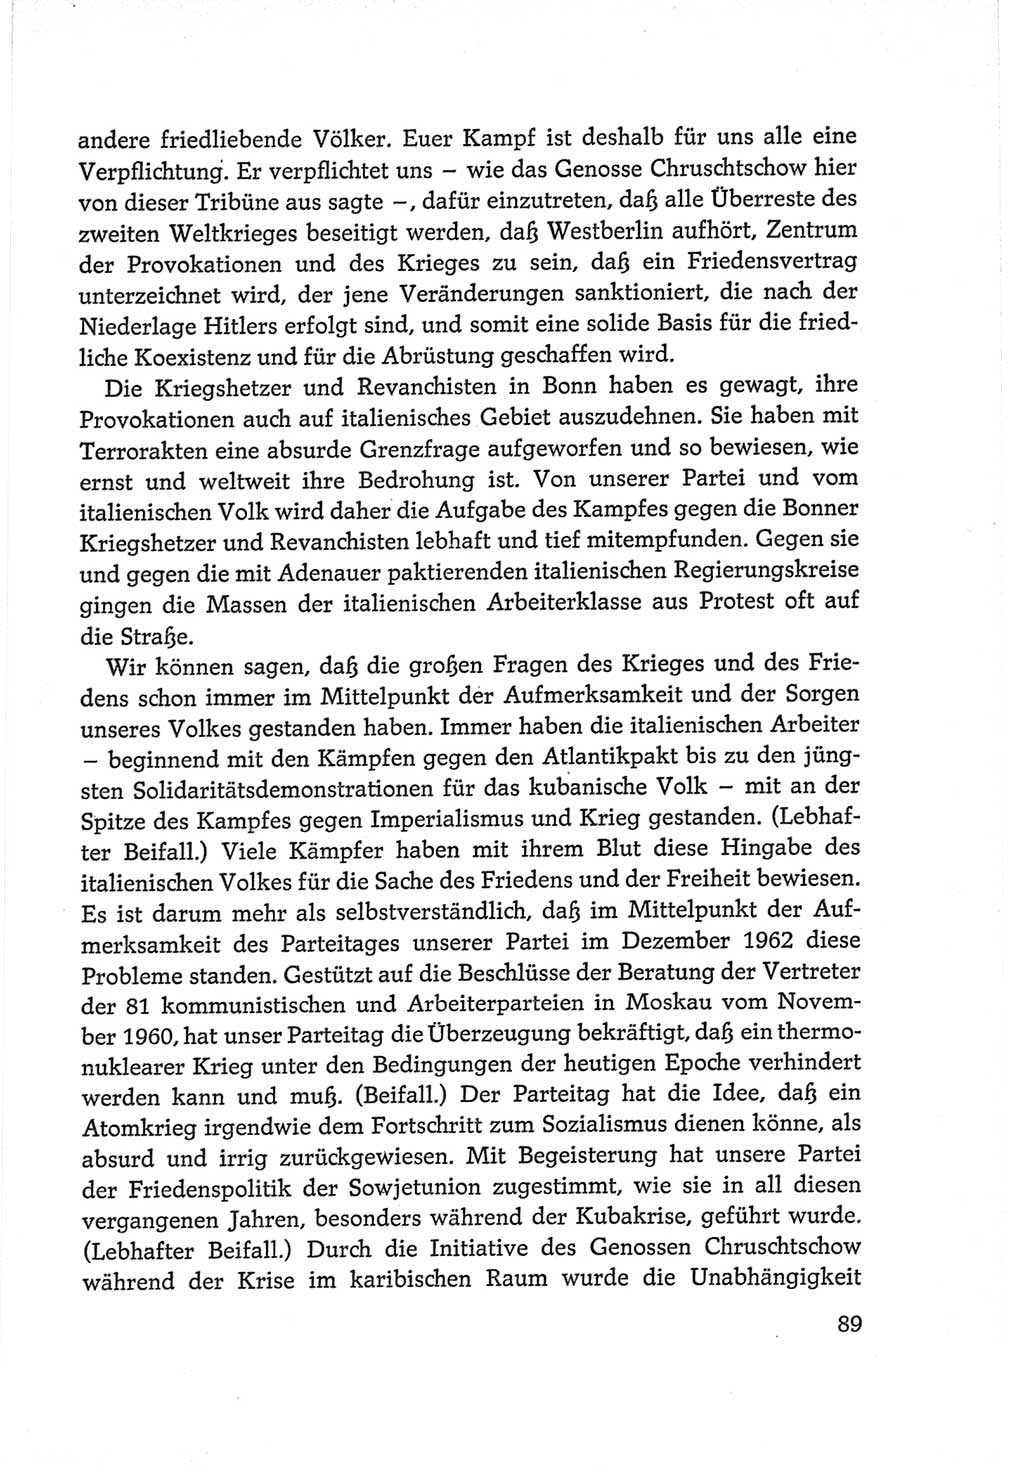 Protokoll der Verhandlungen des Ⅵ. Parteitages der Sozialistischen Einheitspartei Deutschlands (SED) [Deutsche Demokratische Republik (DDR)] 1963, Band Ⅱ, Seite 89 (Prot. Verh. Ⅵ. PT SED DDR 1963, Bd. Ⅱ, S. 89)